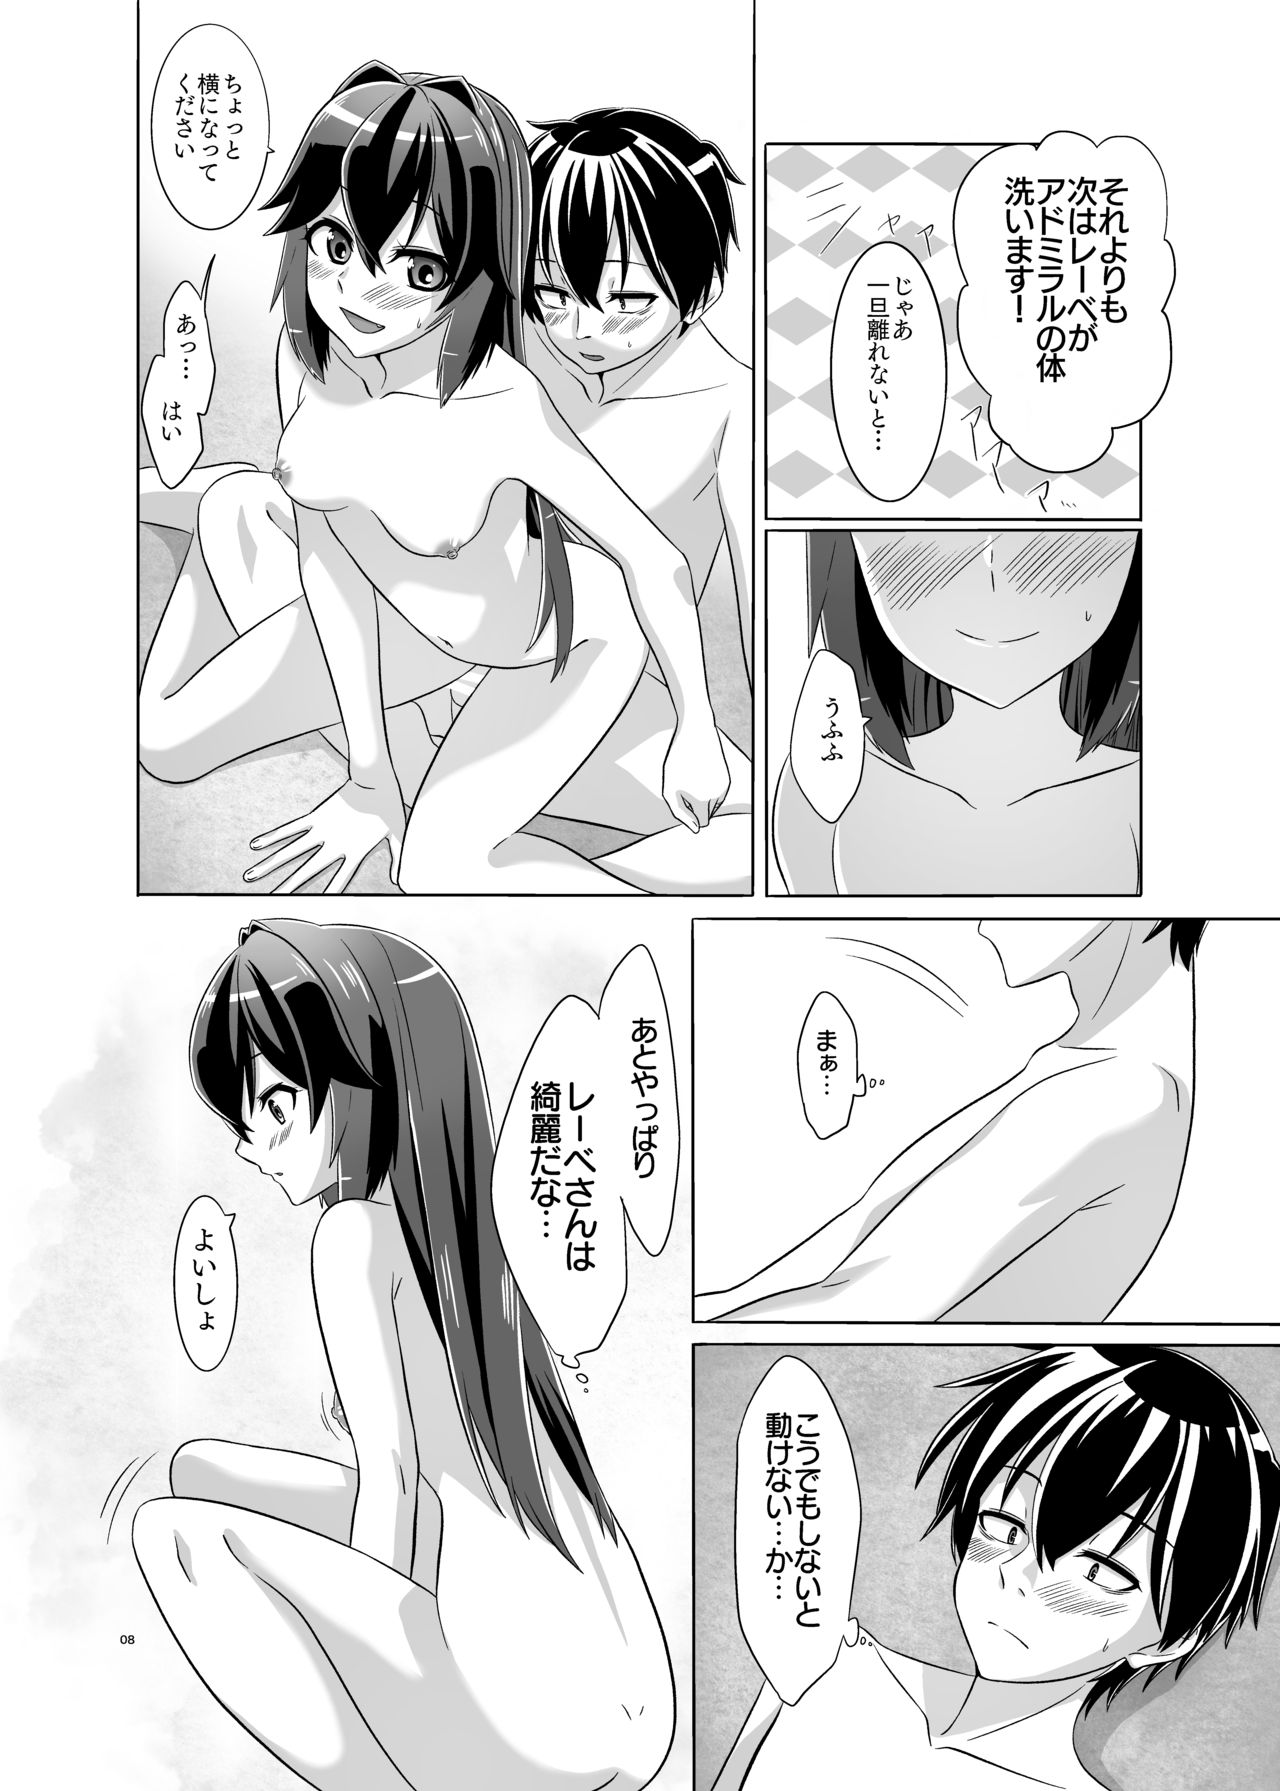 [Torutī-ya] Itsumo no yoru futari no yotogi⑵ (Warship Girls R) page 9 full